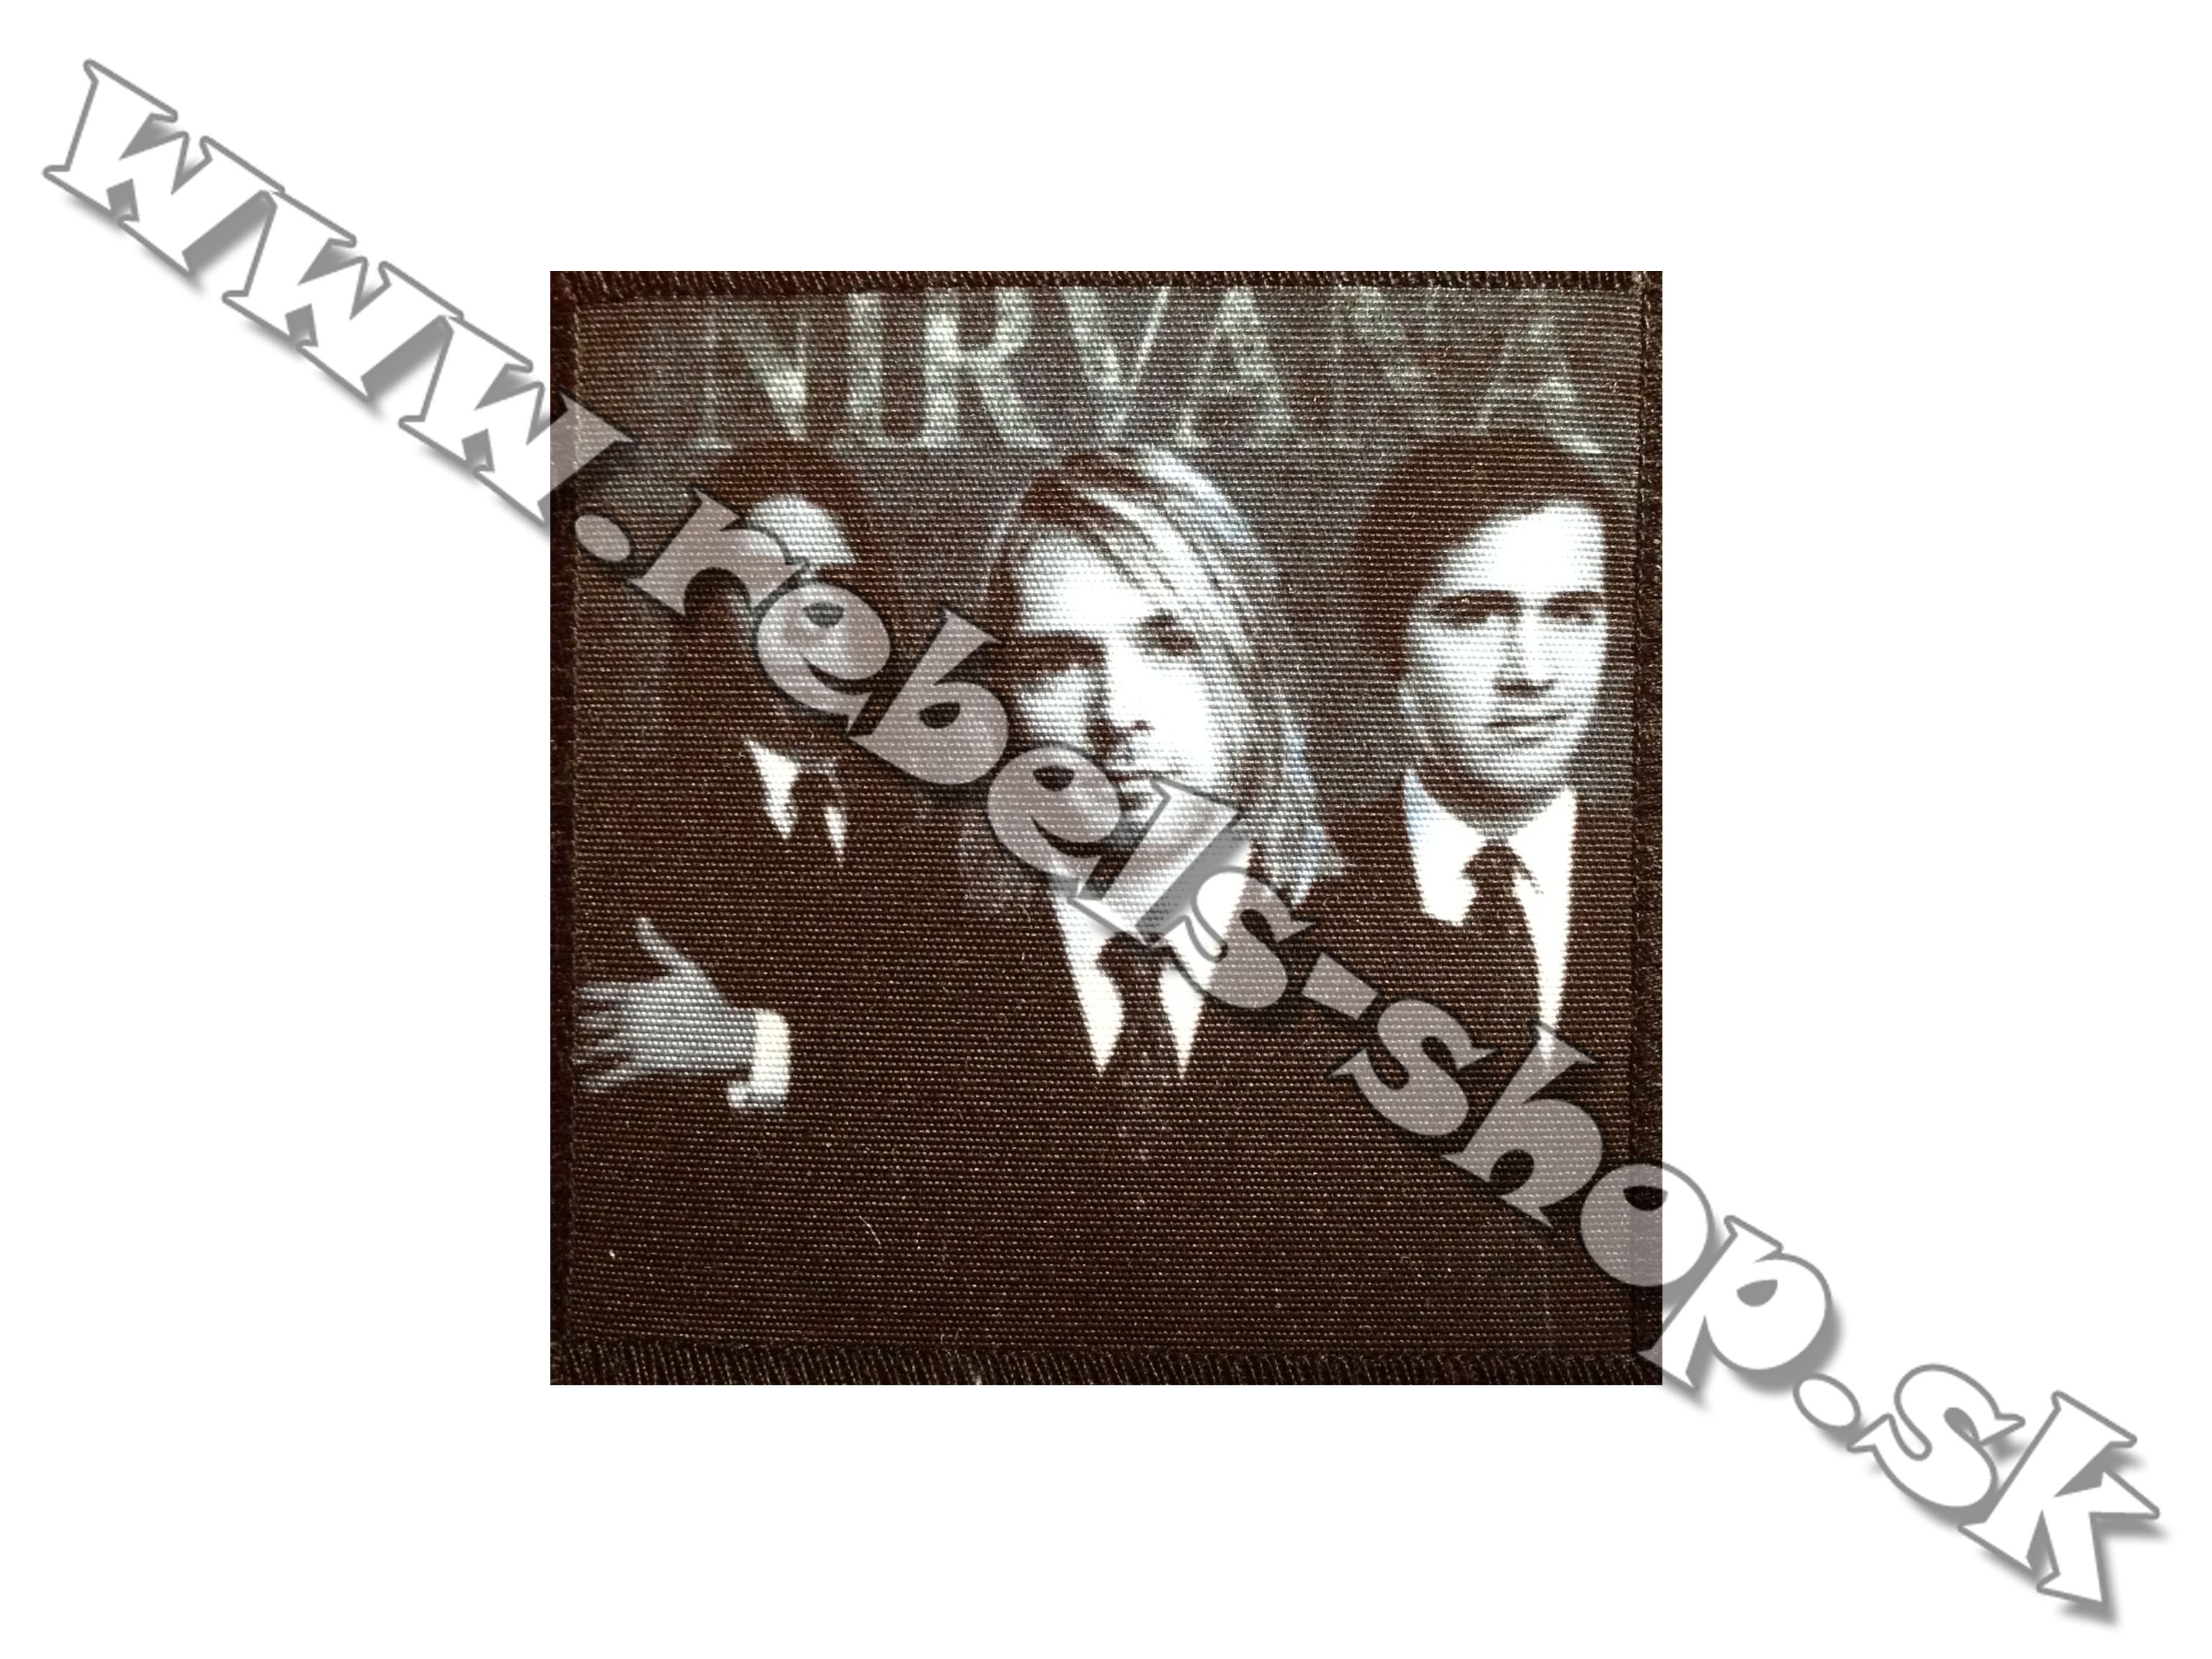 Nášivka "Nirvana"